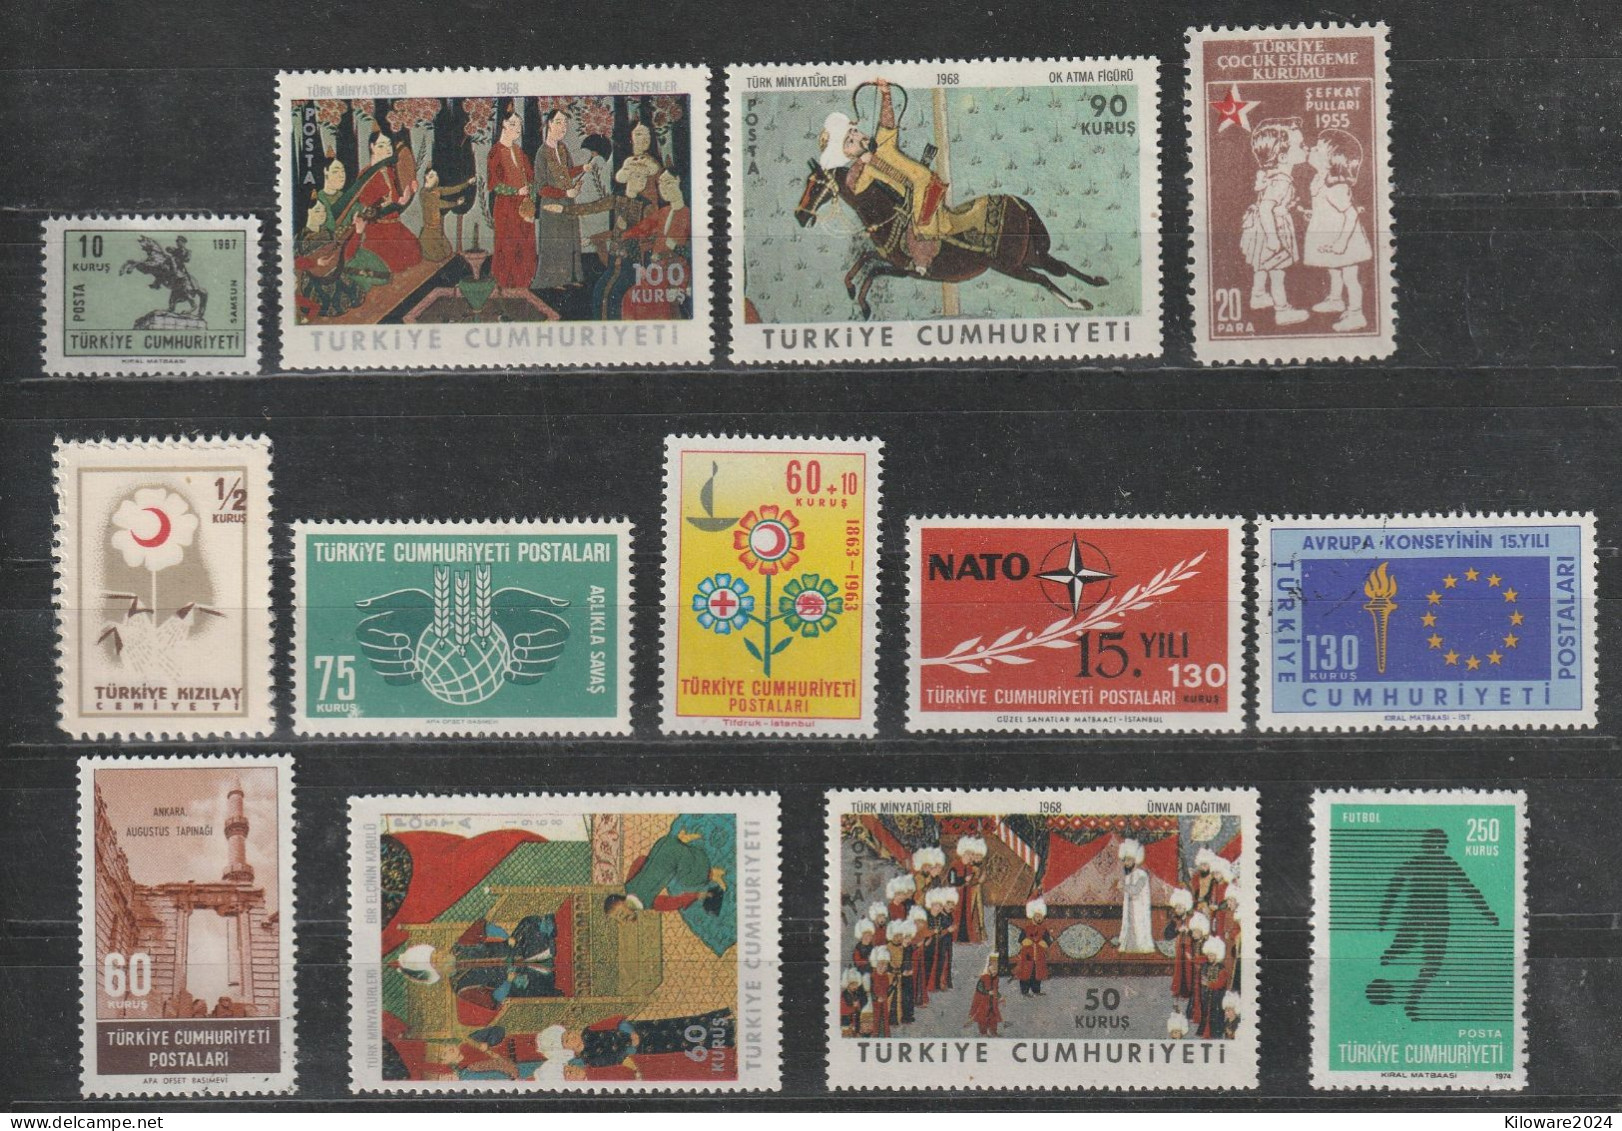 Türkei: Lot Mit Versch.Werten, Postfrisch.  (082) - Lots & Kiloware (mixtures) - Max. 999 Stamps